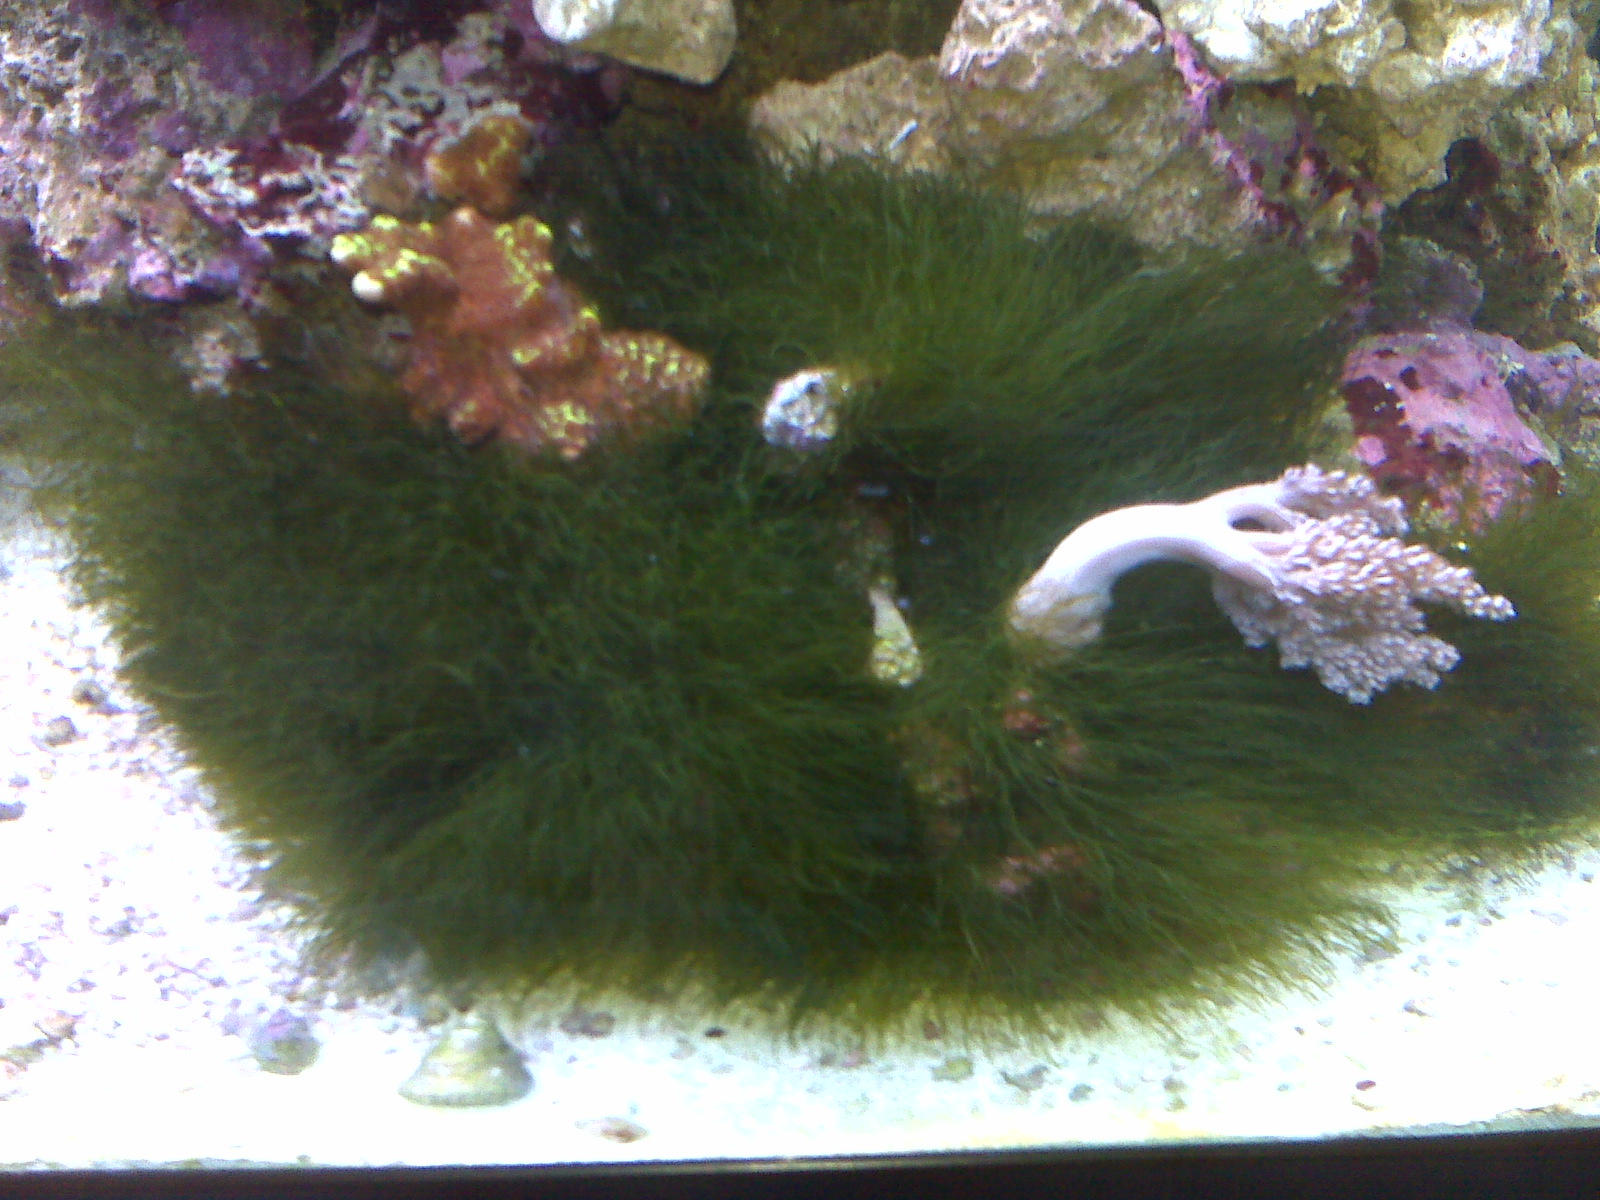 Display-Aquarium-with-Algae-2.jpg